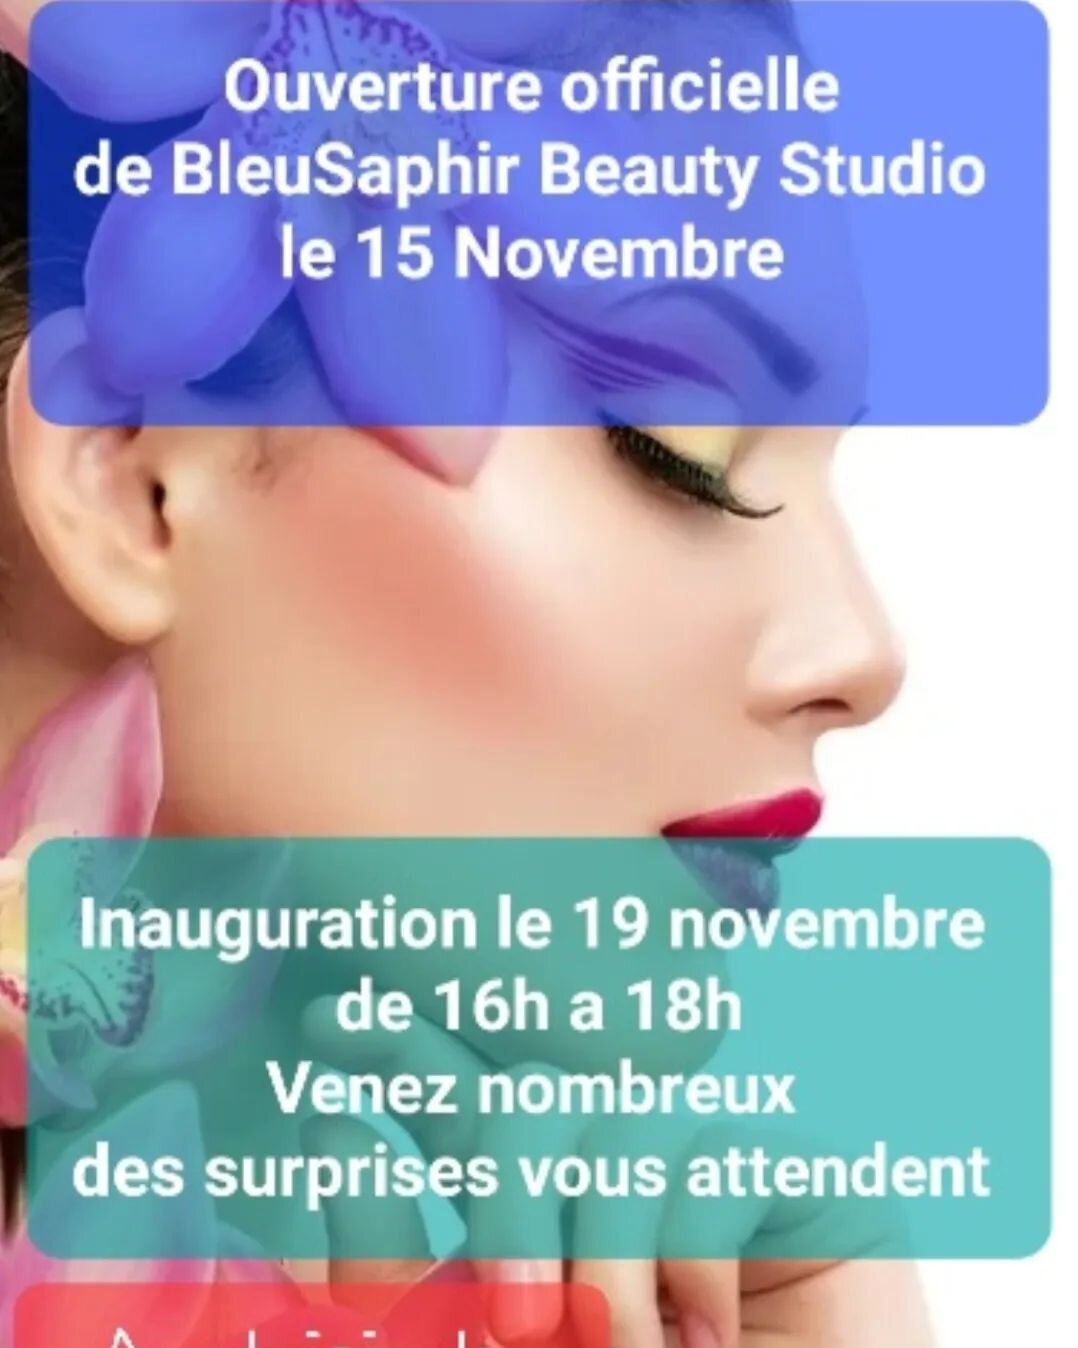 www.bleu-saphir.ch

WhatsApp 076 509 59 78

https://salonkee.ch/salon/bleusaphir-beauty-studio?lang=fr

BleuSaphir Beauty Studio 
Rue Fauporte 8
3977 Granges